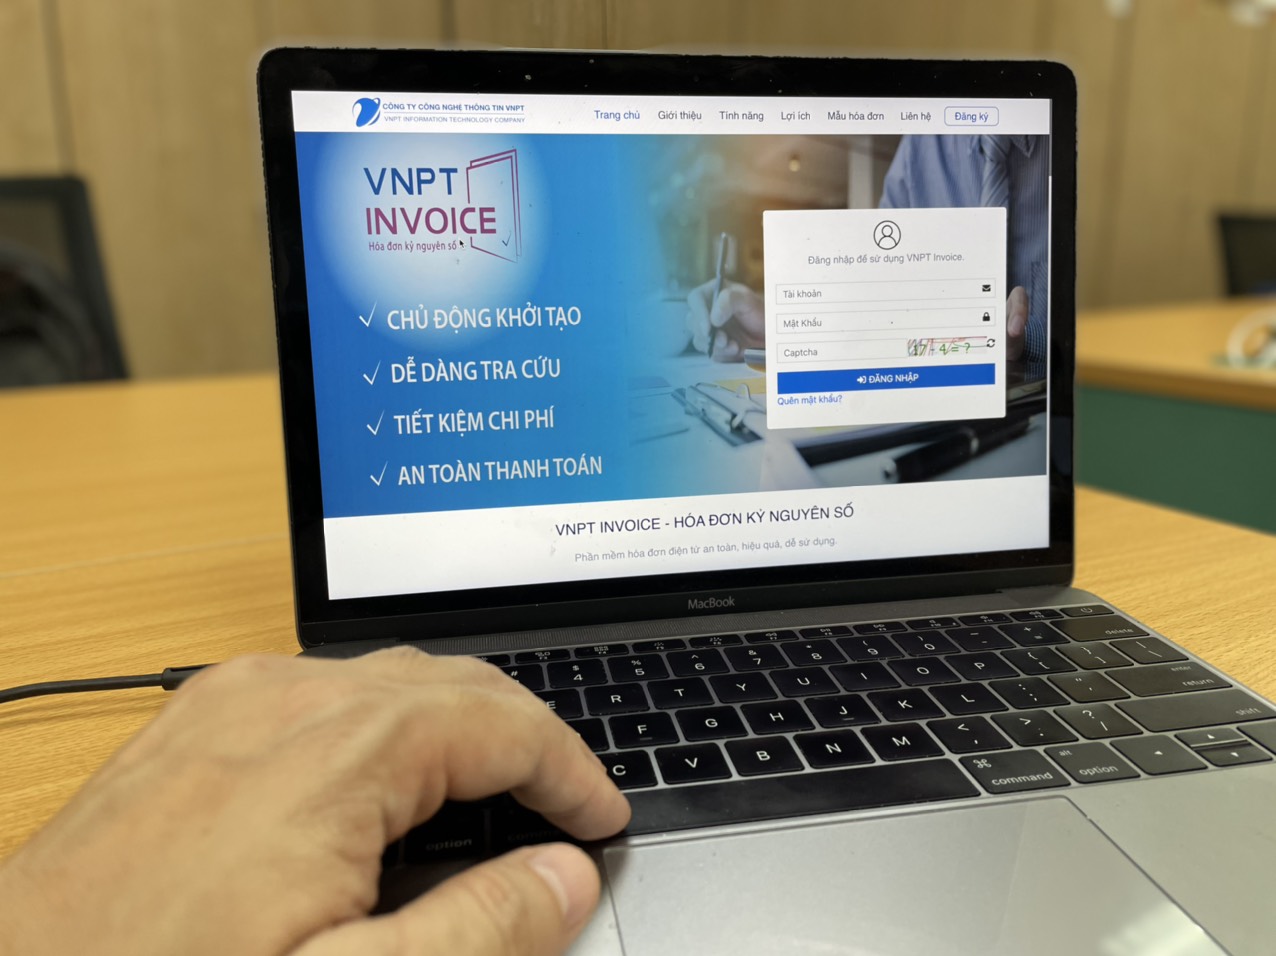 VNPT Invoice trong suốt nhiều năm qua luôn là một trong những nhà cung cấp dịch vụ hóa đơn điện tử hàng đầu chiếm lĩnh thị trường tại Việt Nam.jpg